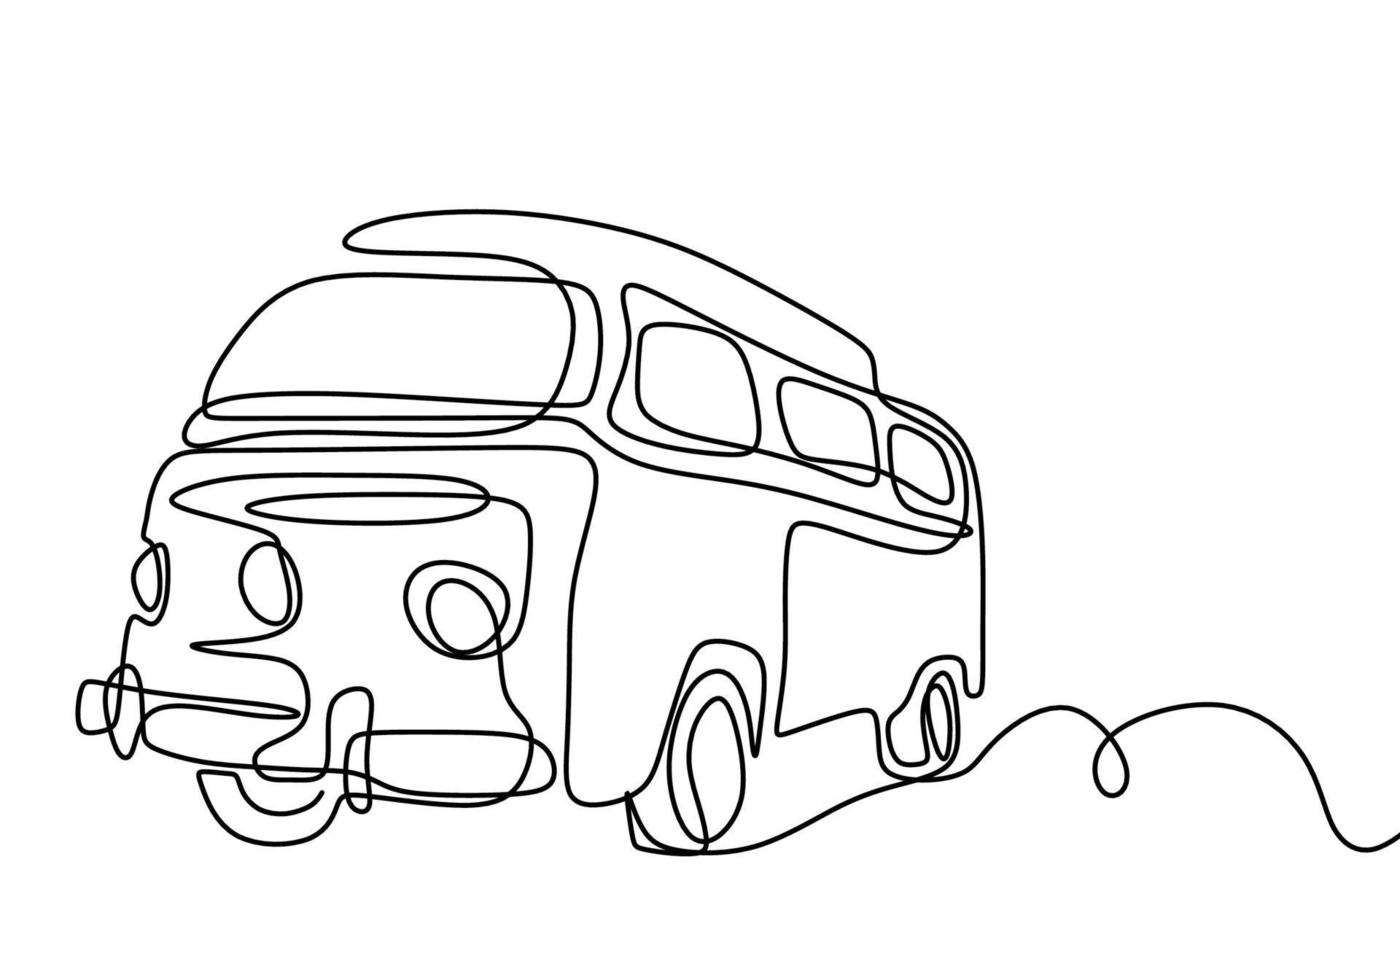 dessin de ligne continue de campeur. une voiture de camping pour voyager isolé sur fond blanc. le concept de se déplacer en camping-car, camping familial, camping, caravane. illustration vectorielle vecteur